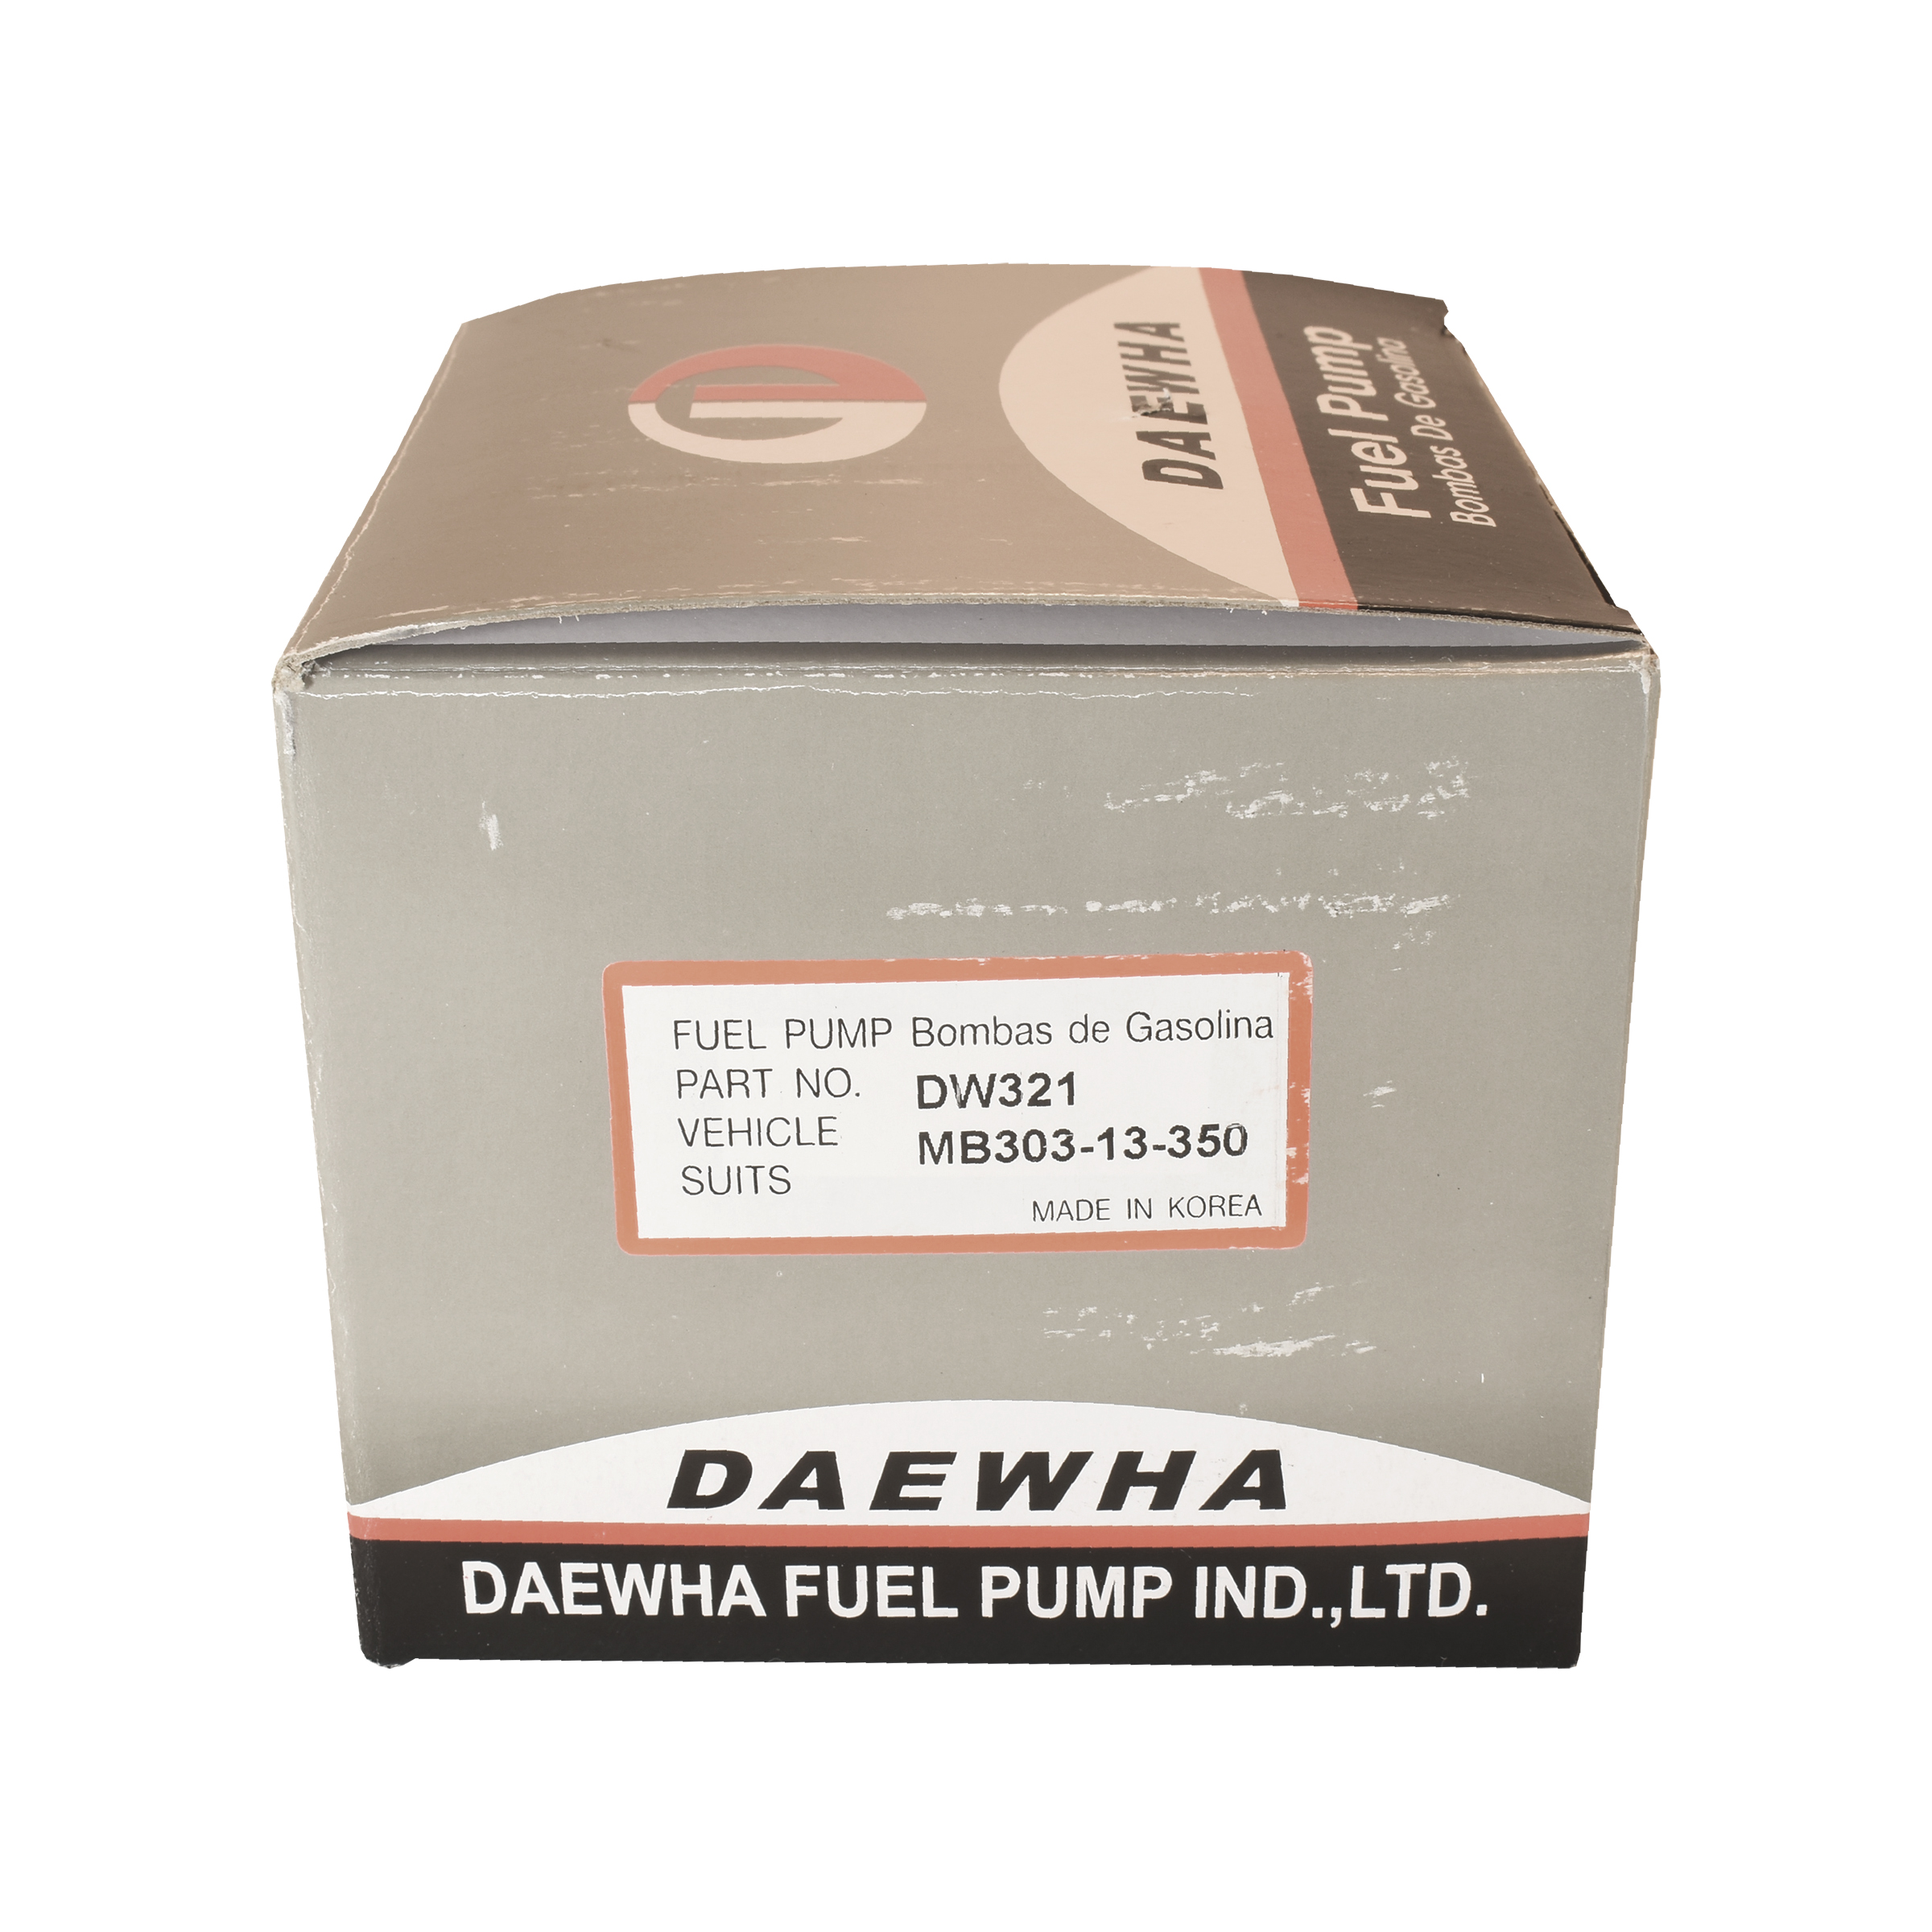 پمپ بنزین دایهوا مدل DW321 مناسب برای پراید کاربراتوری